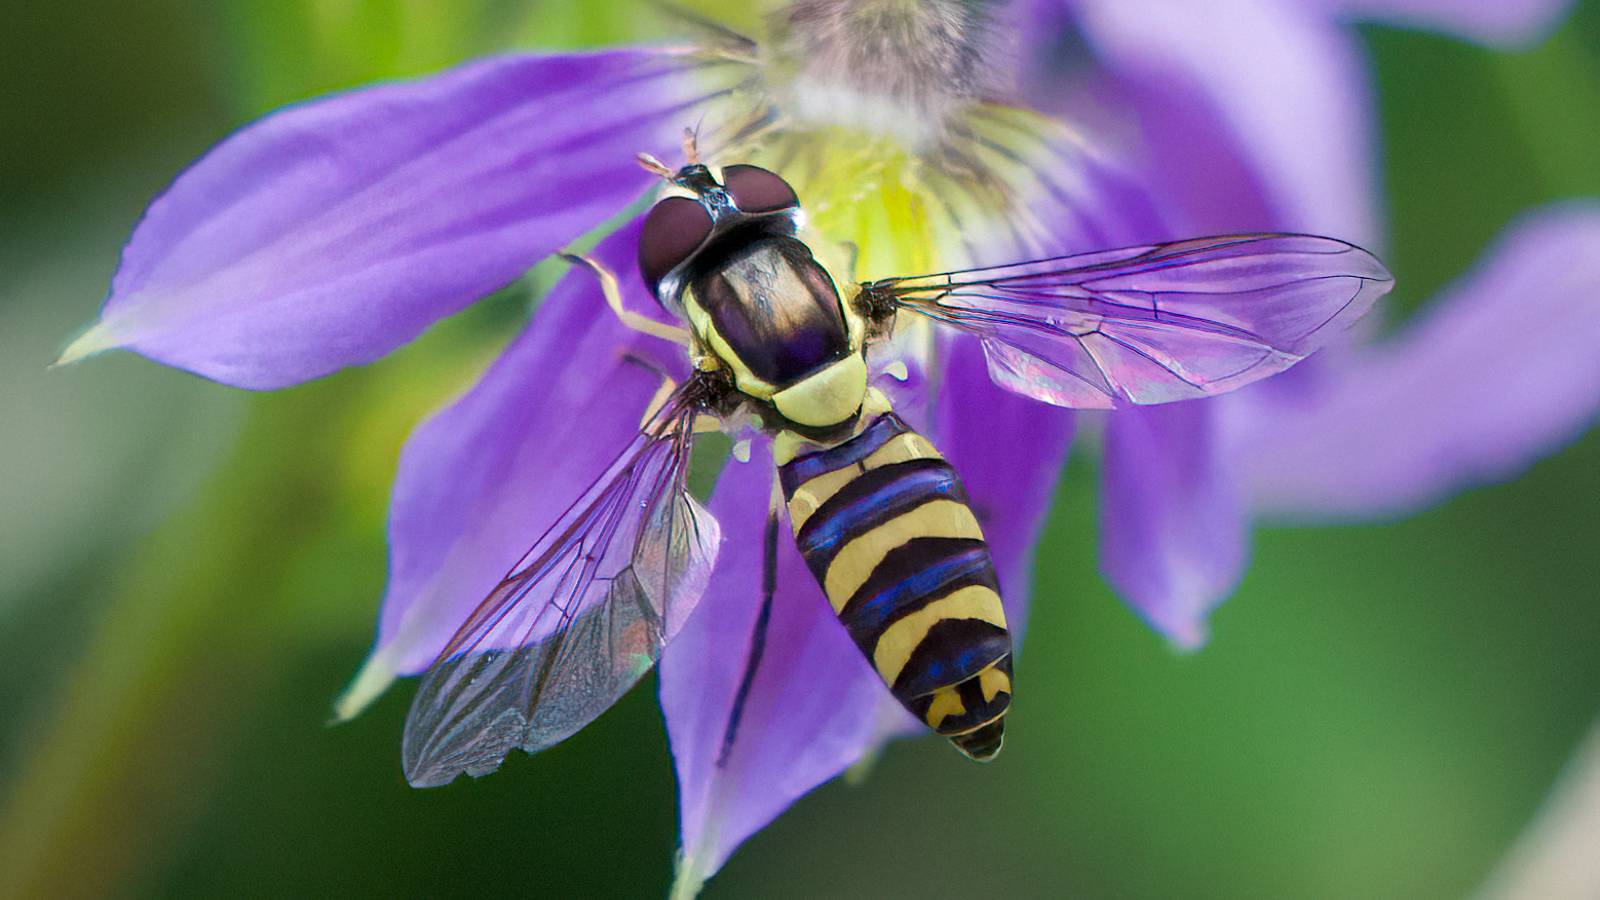 Fauna: Hoverfly